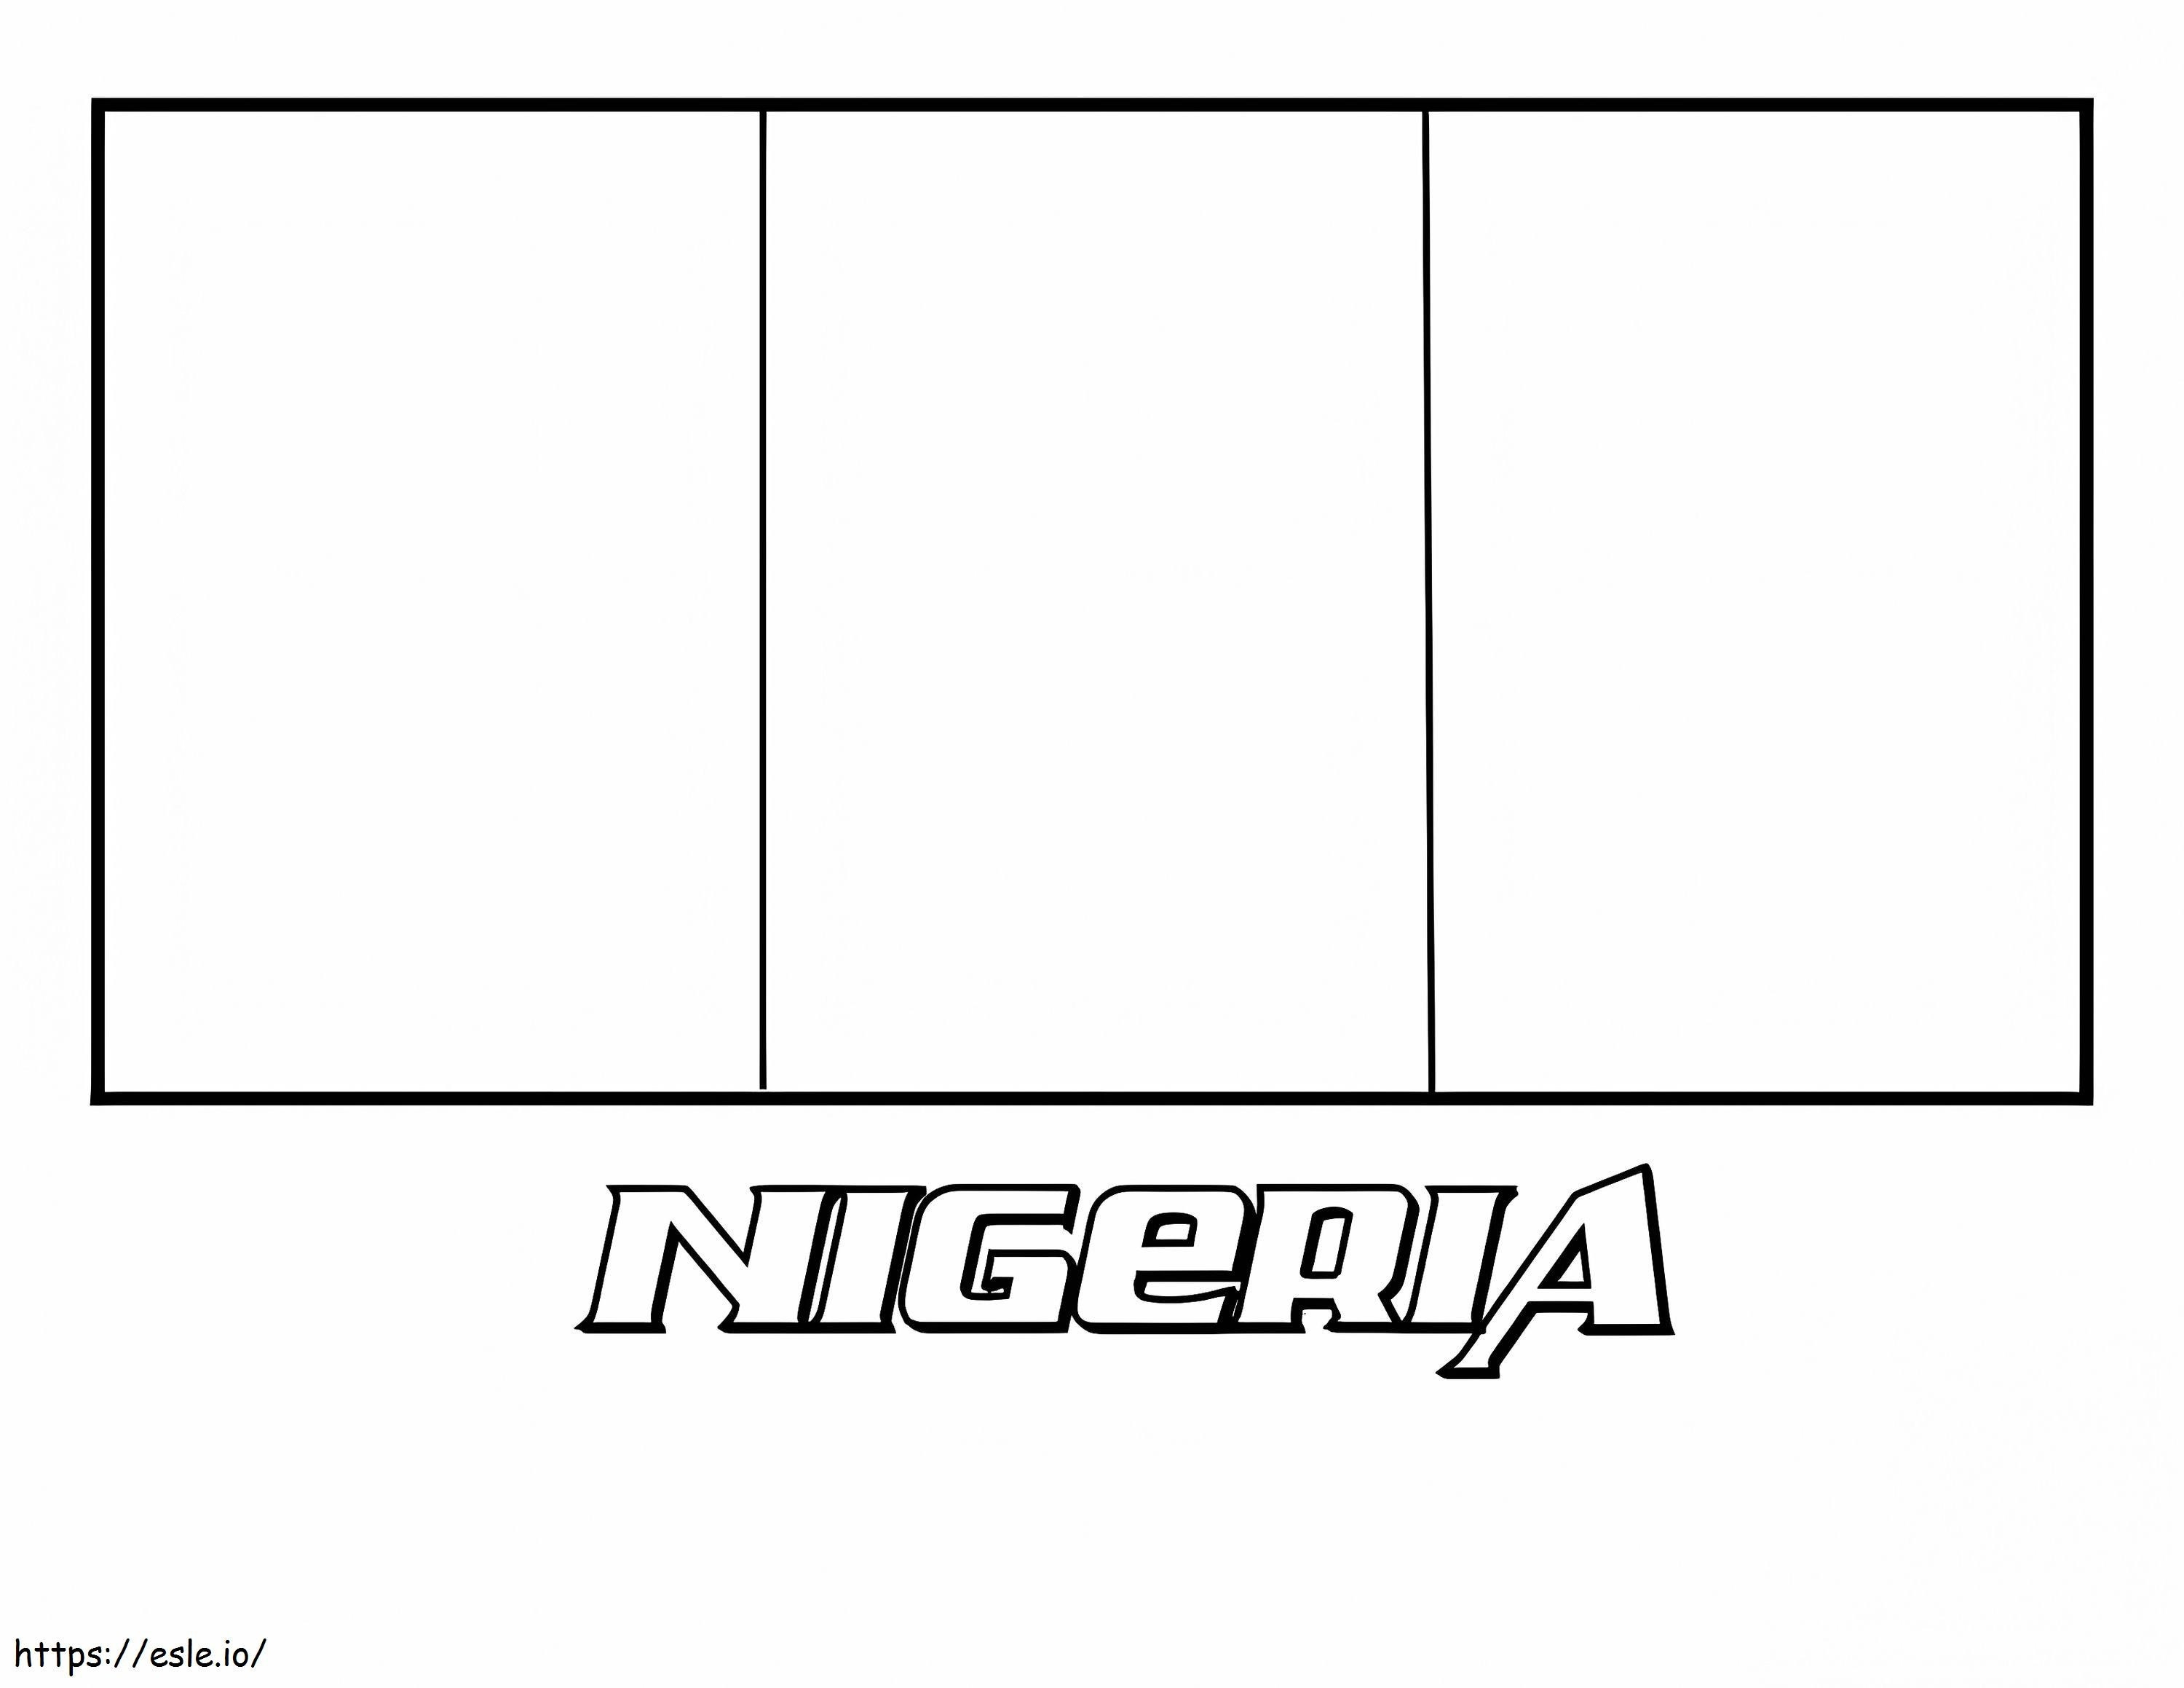 Flagge von Nigeria 2 ausmalbilder